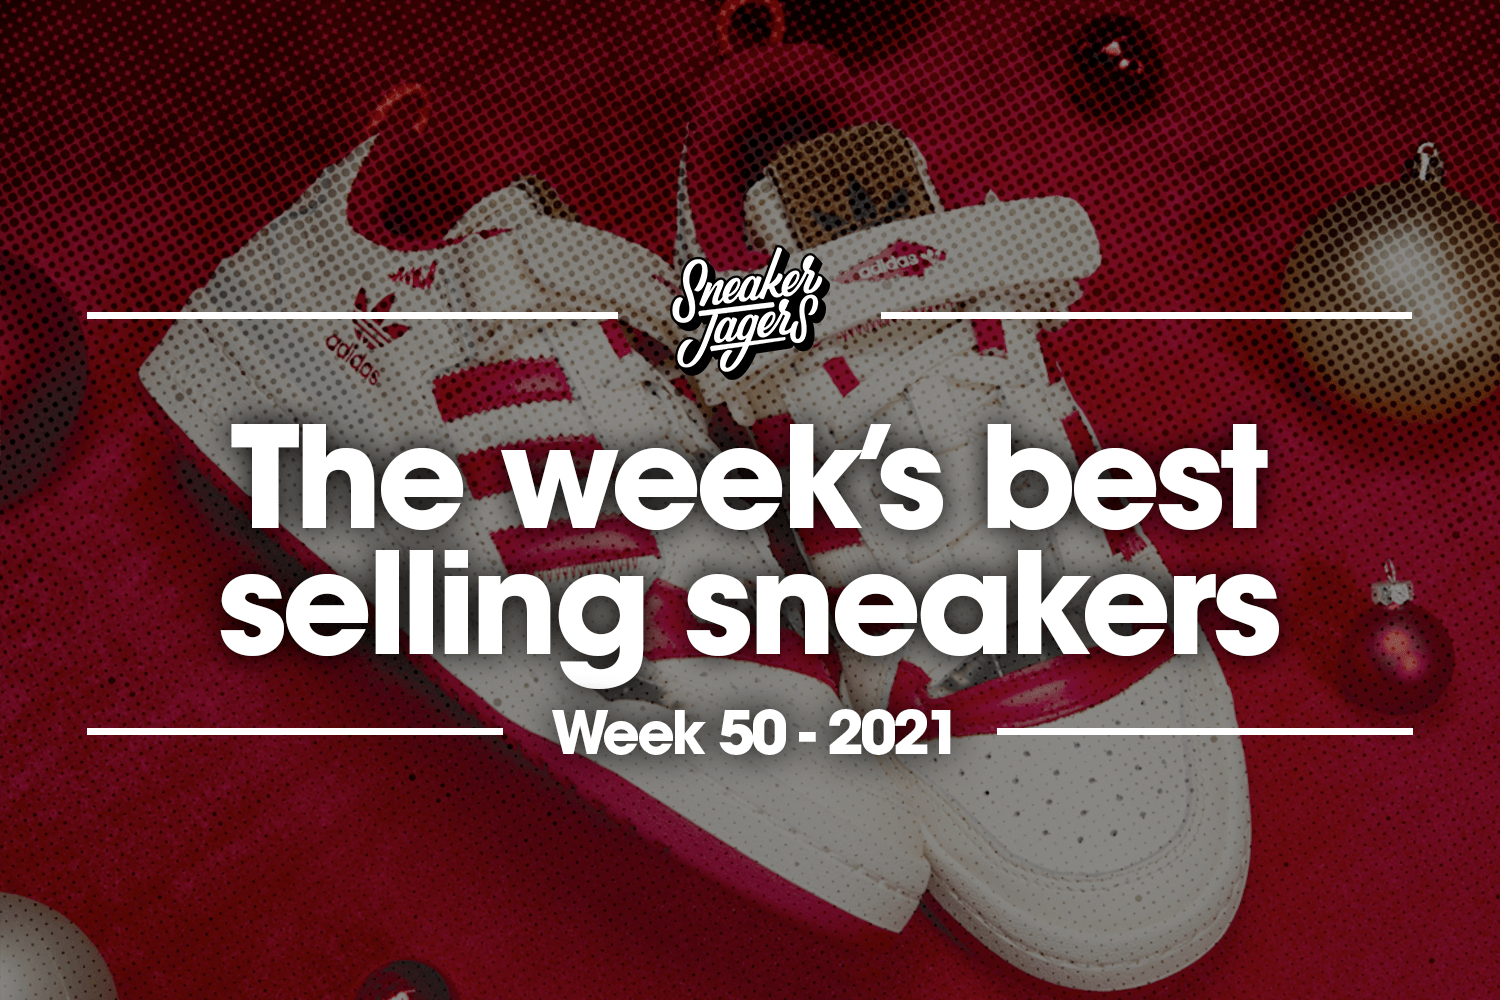 De 5 bestverkochte sneakers van week 50